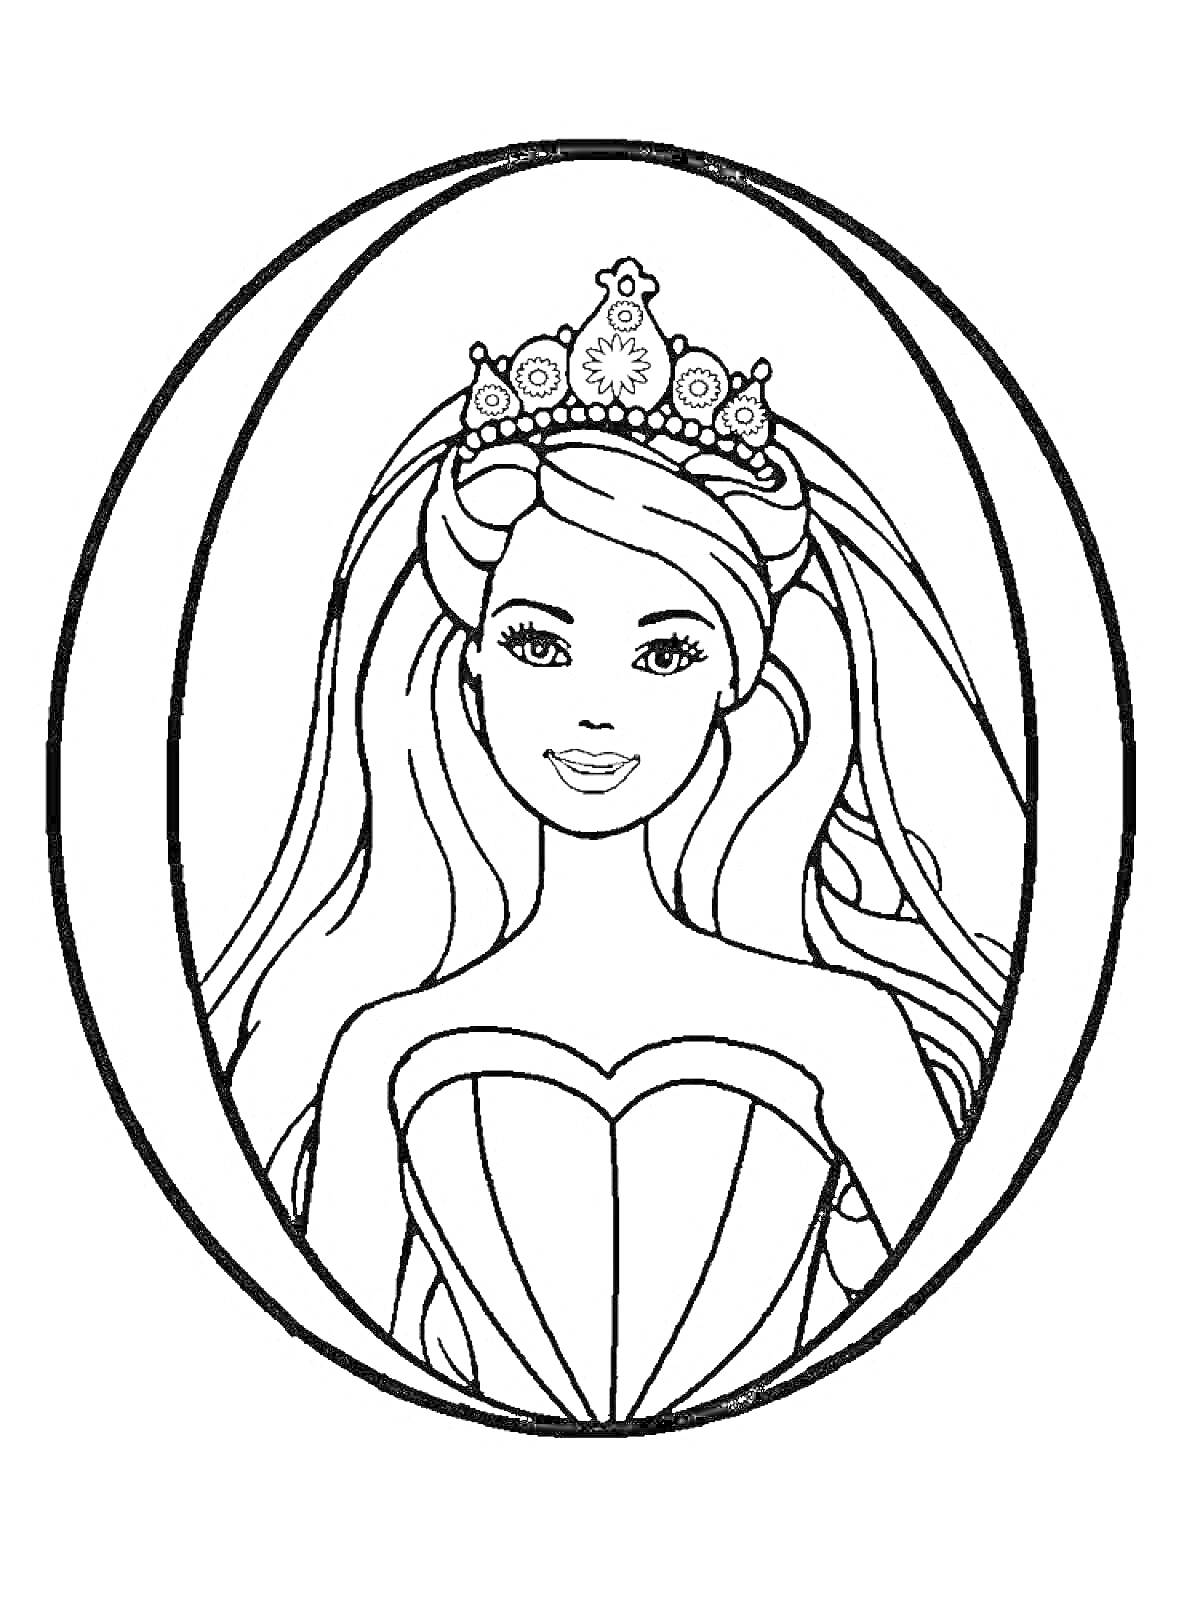 Раскраска Принцесса в короне с длинными волосами в овальной рамке